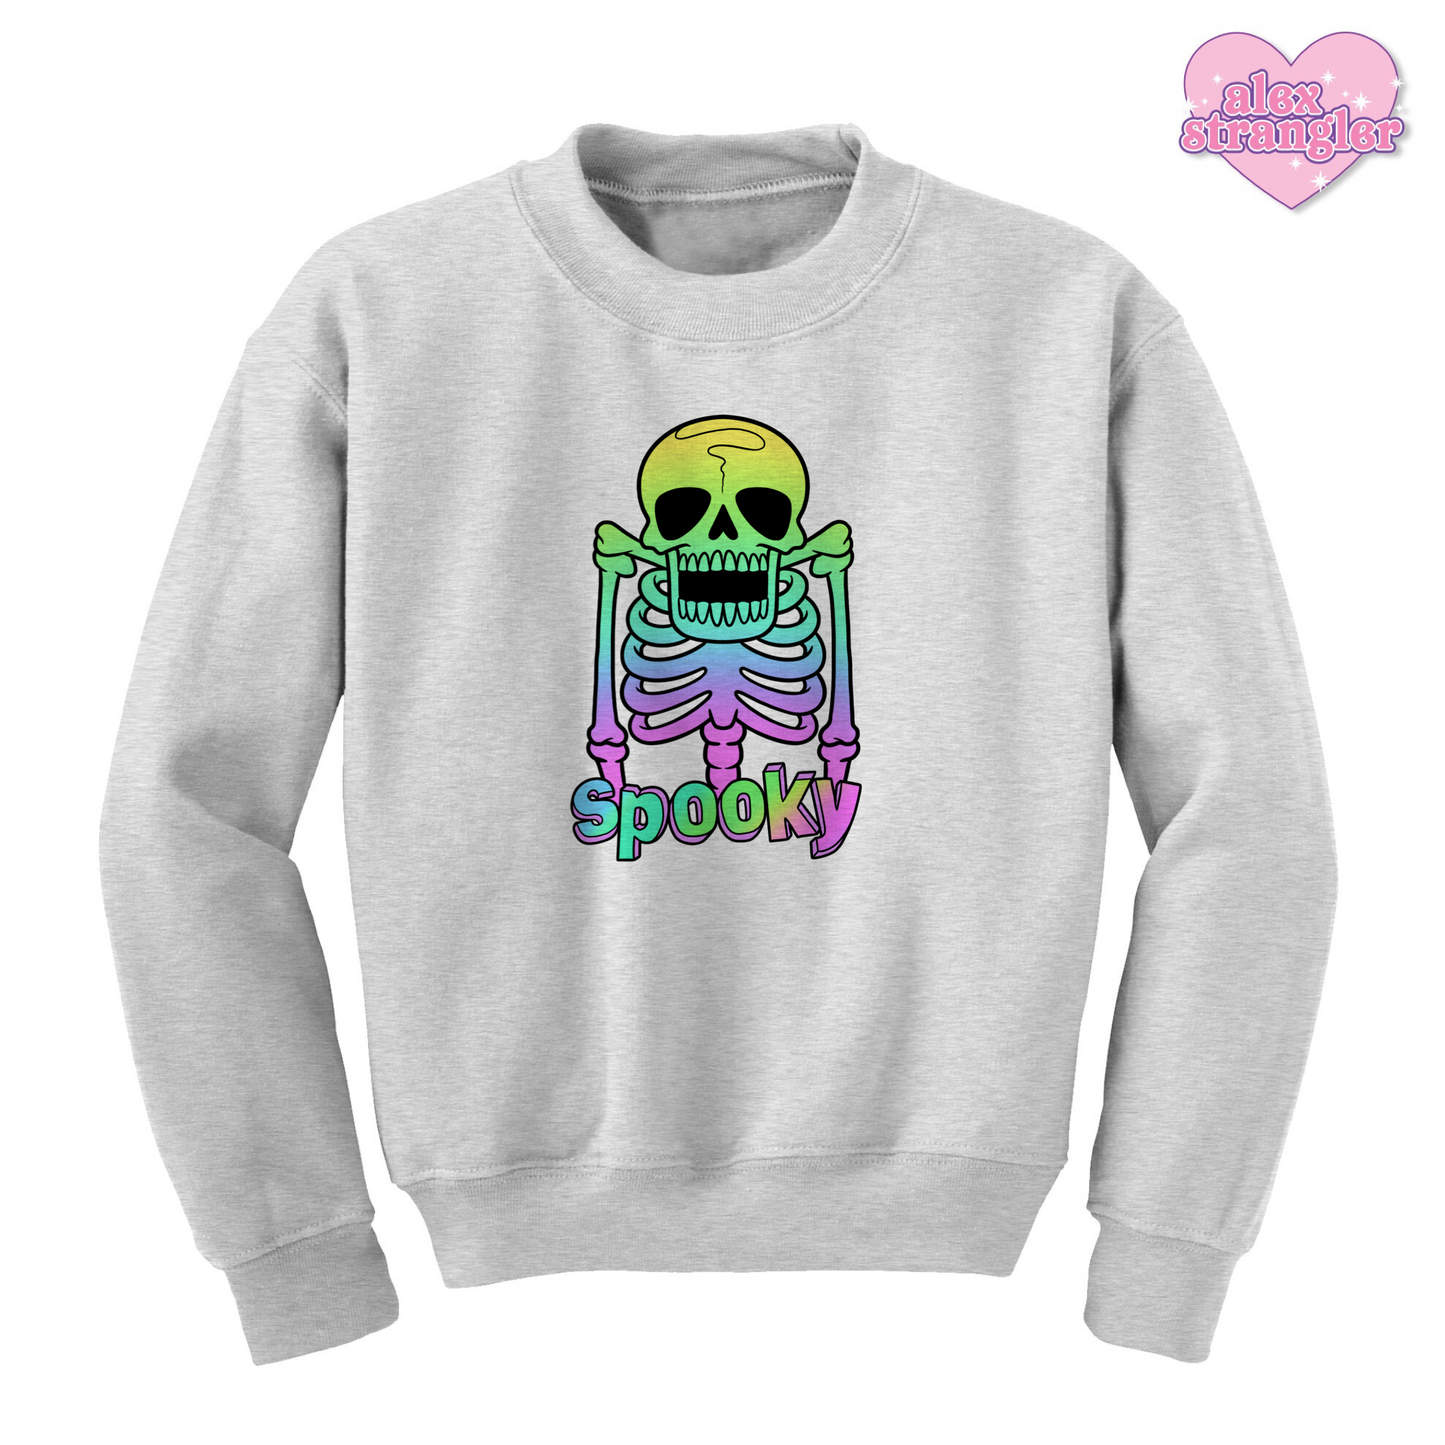 Spooky - Men's/Unisex Crewneck Sweatshirt